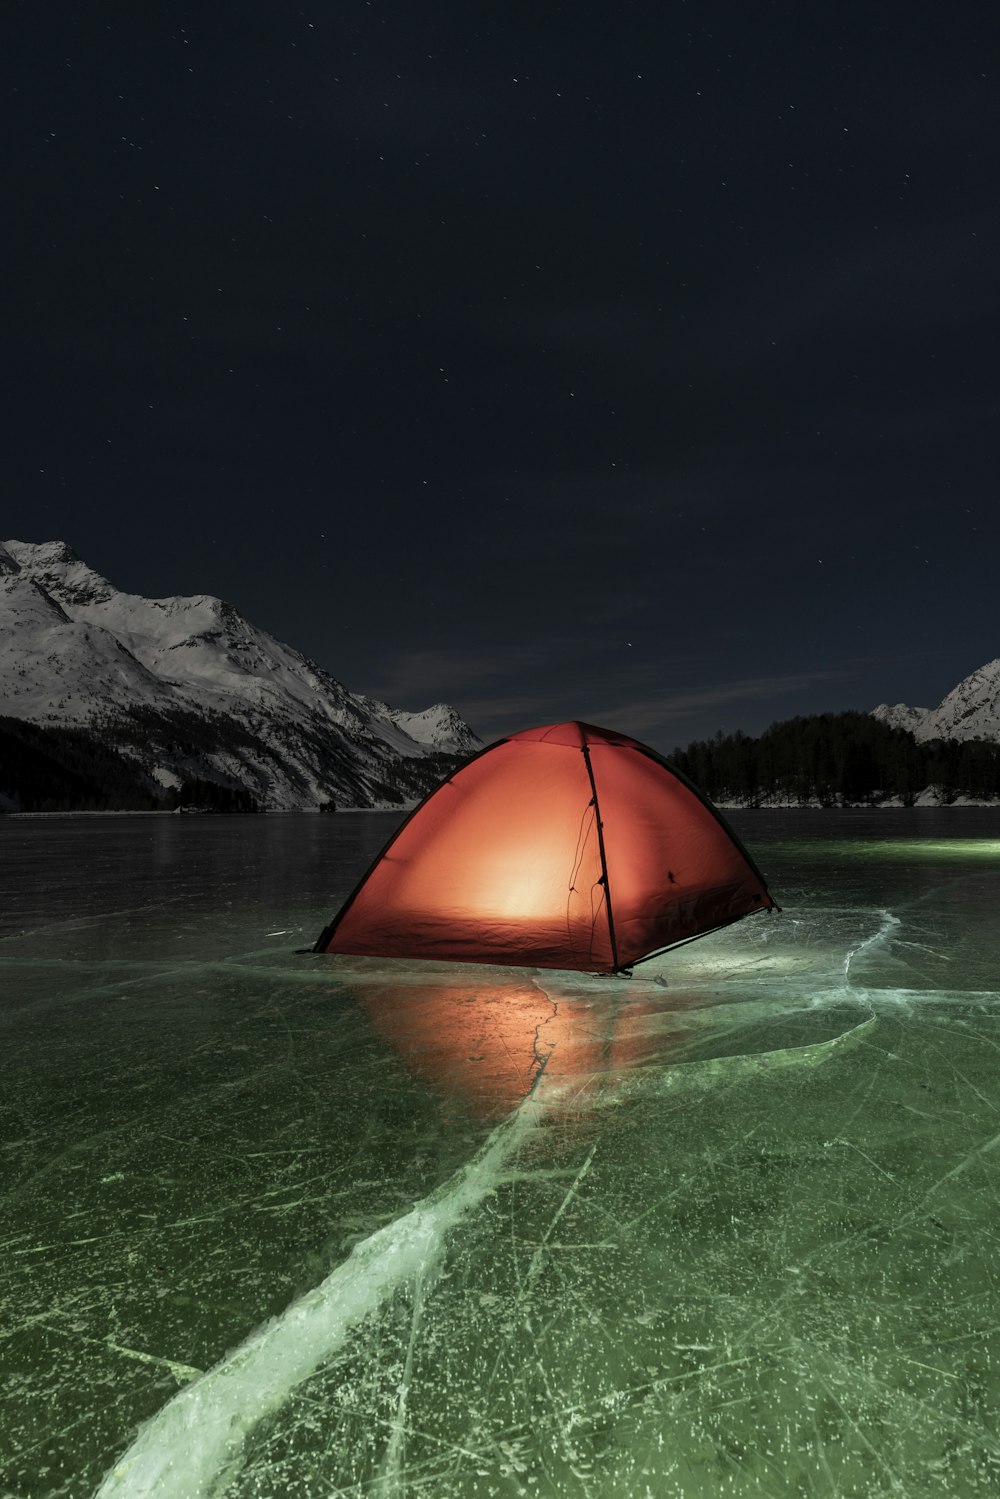 Tente dôme orange sur l’eau verte près de la montagne pendant la nuit